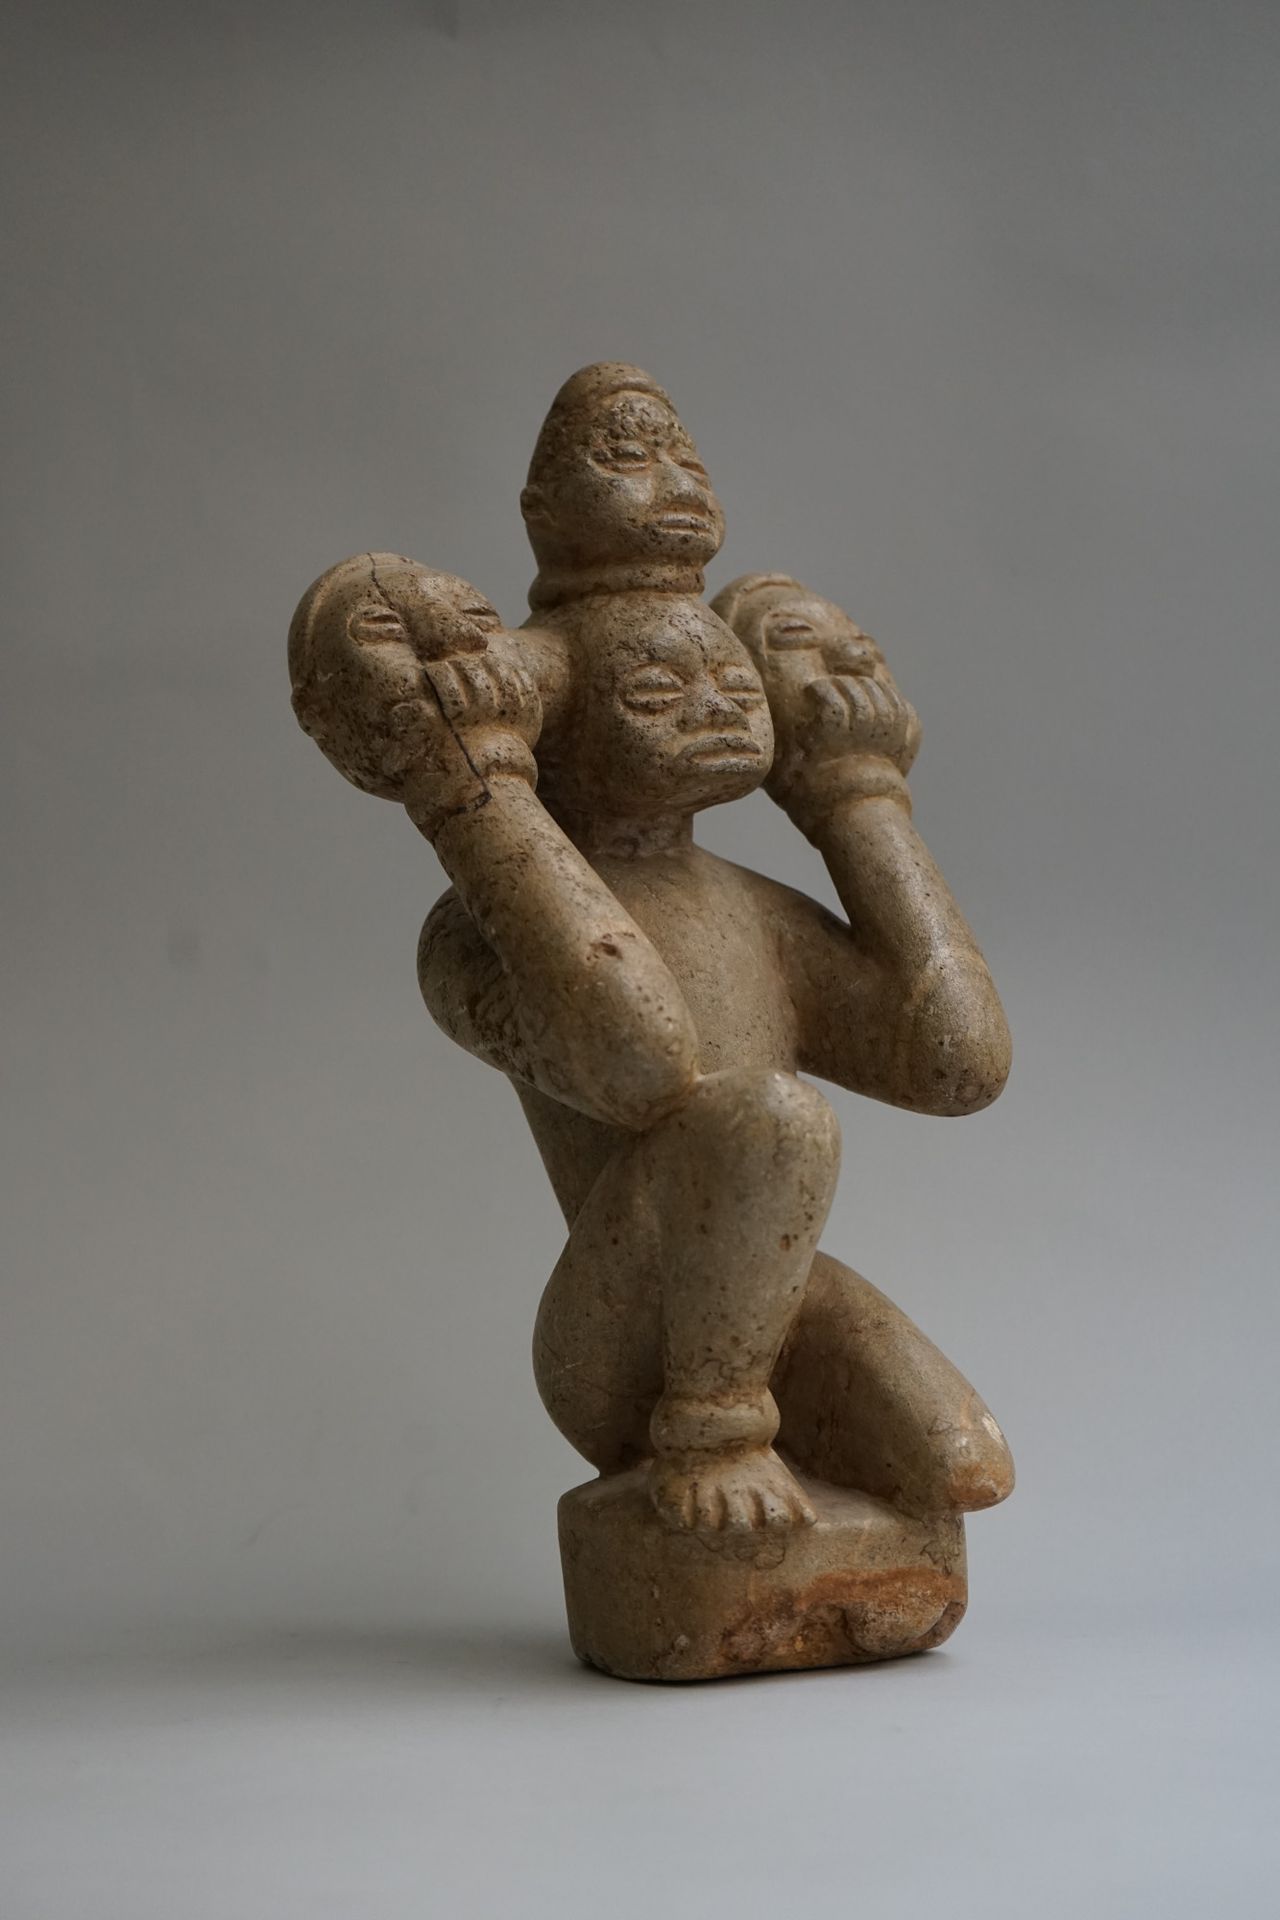 Null 拟人图显示一个跪着的人可能戴着一个三头的面具，他用手支撑着。石灰石。

刚果民主共和国。

高：32厘米

这批货物不接受邮寄，只接受承运人。